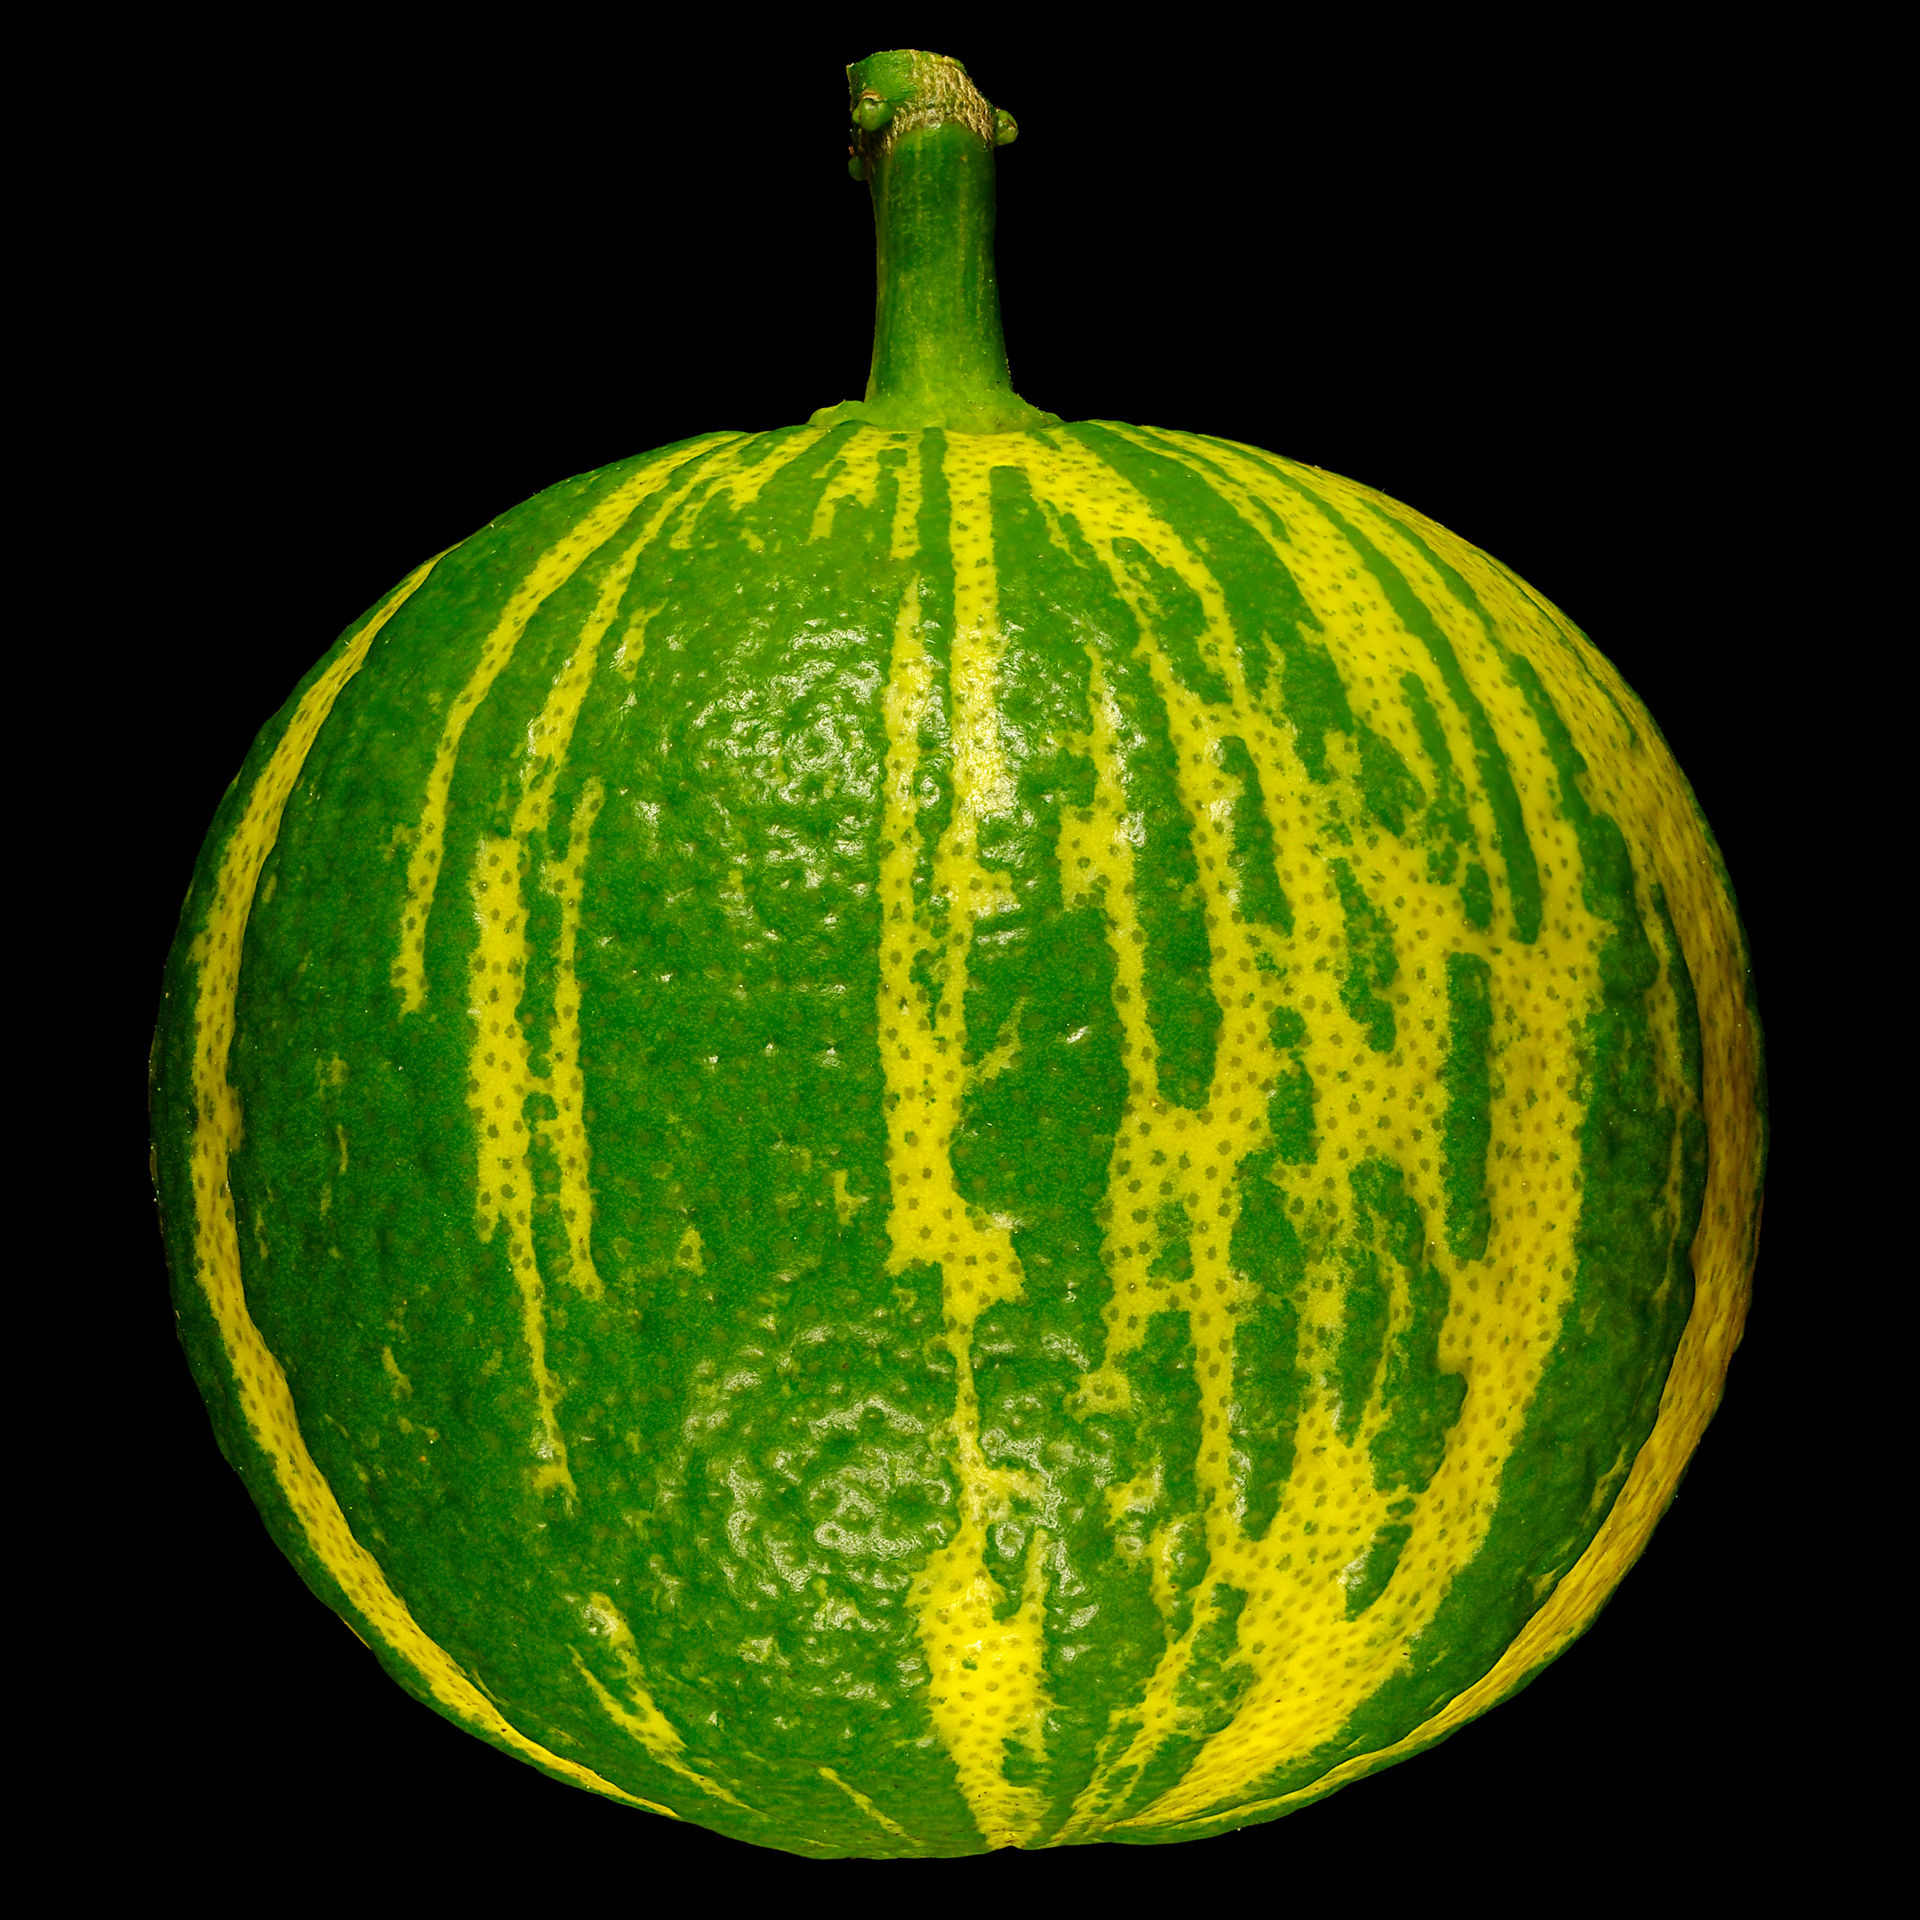 Striped bitter orange: Citrus × aurantium ‚Fasciata‘ (unripe)